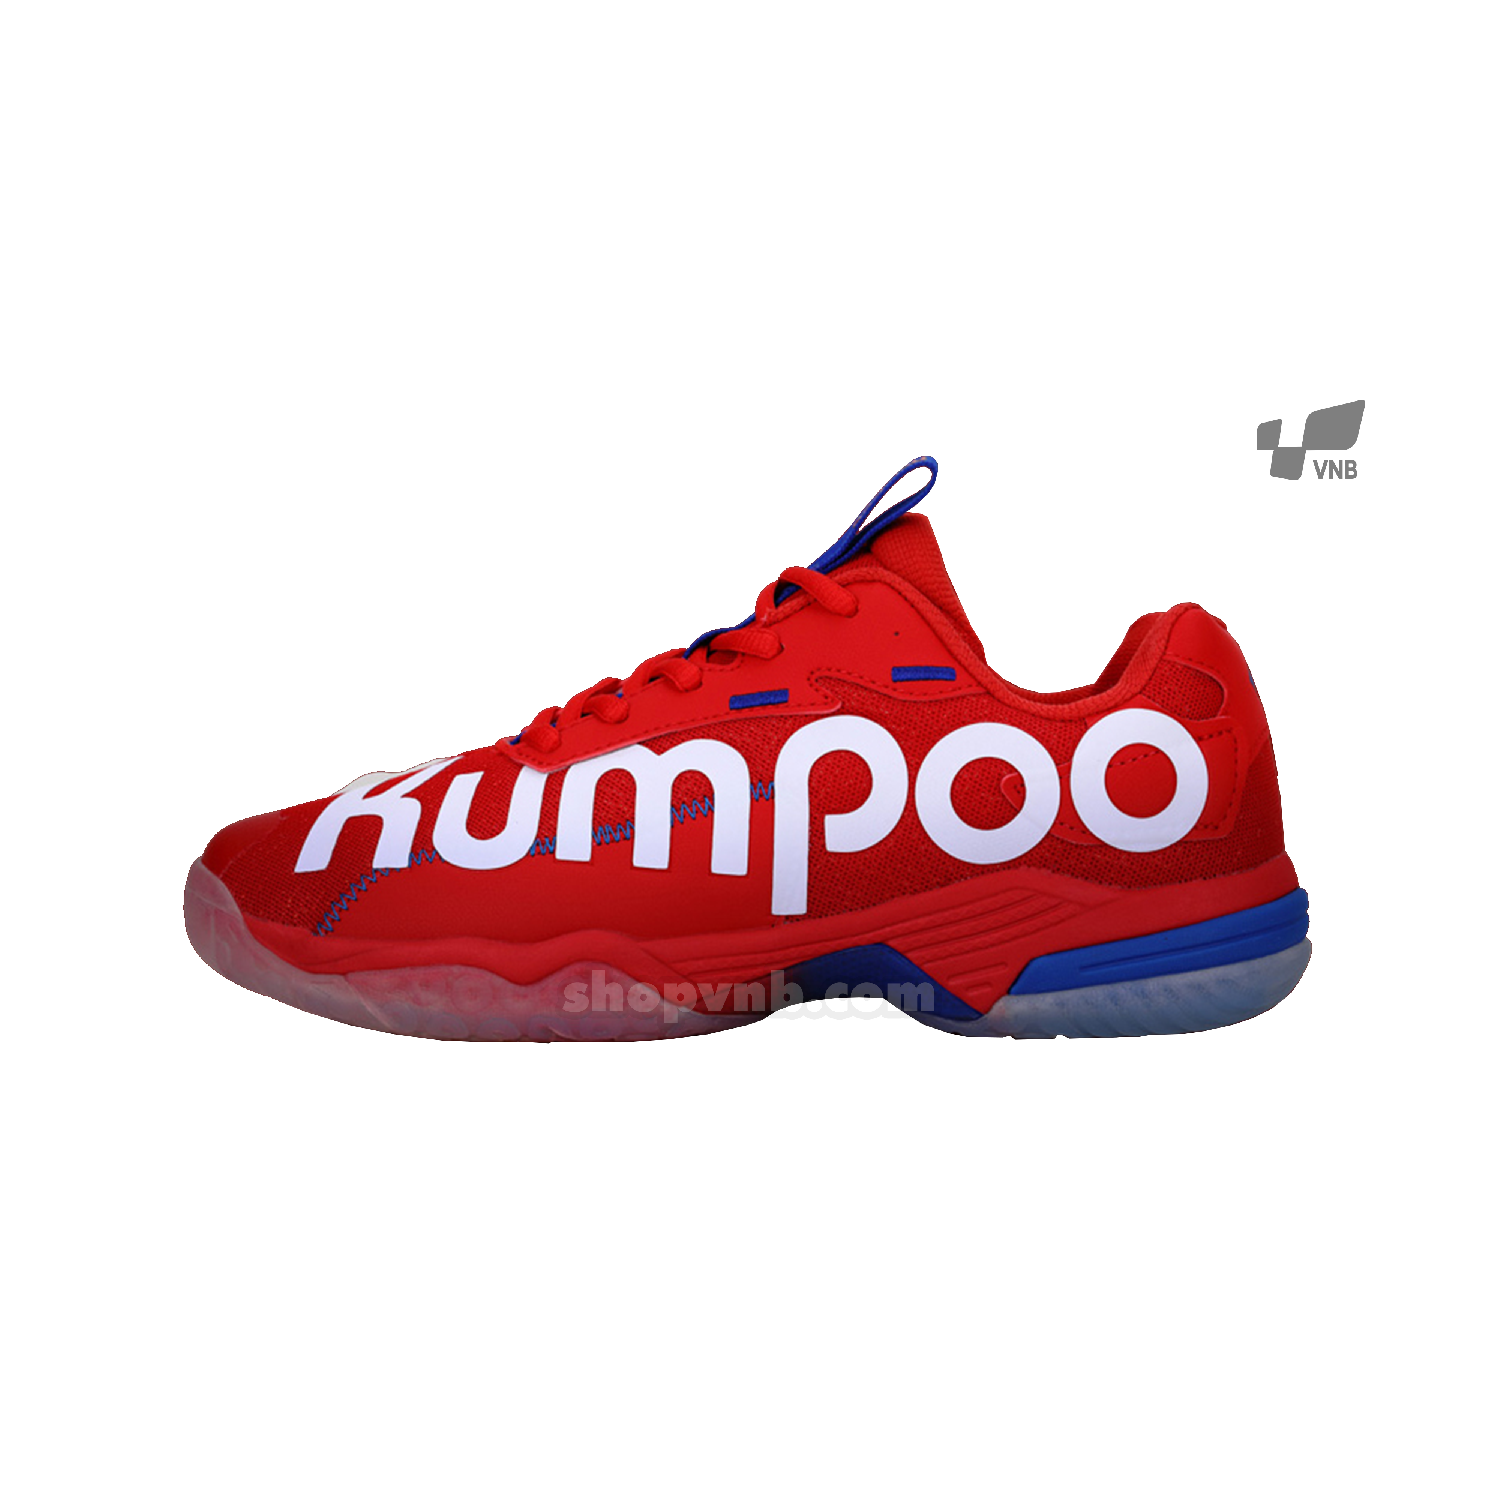 Giày cầu lông Kumpoo KHR - D72 đỏ 2020